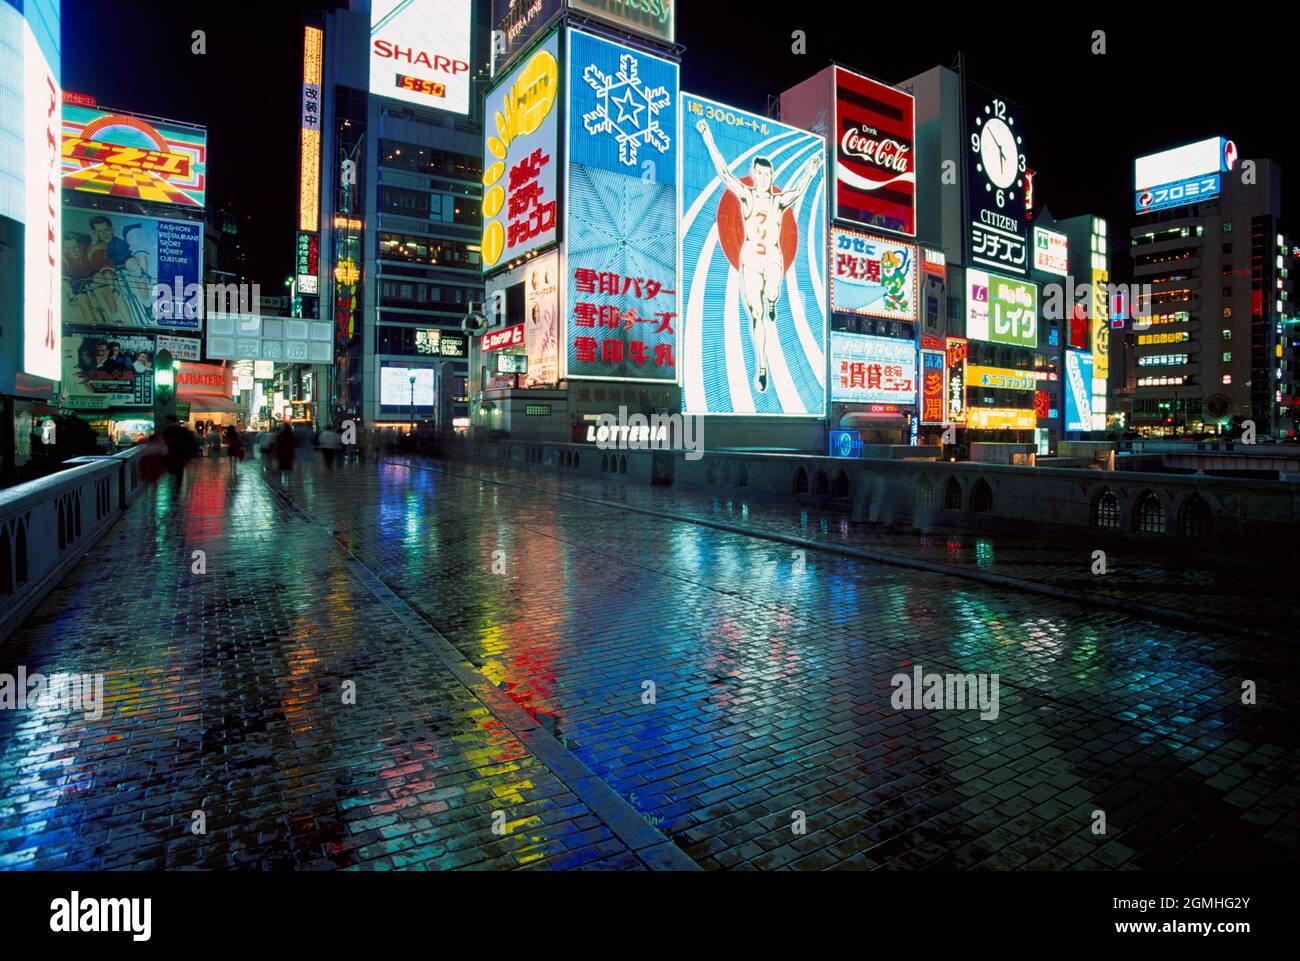 Giappone. La città di Osaka di notte. Segnali pubblicitari al neon riflessi su pavimentazione bagnata. Foto Stock